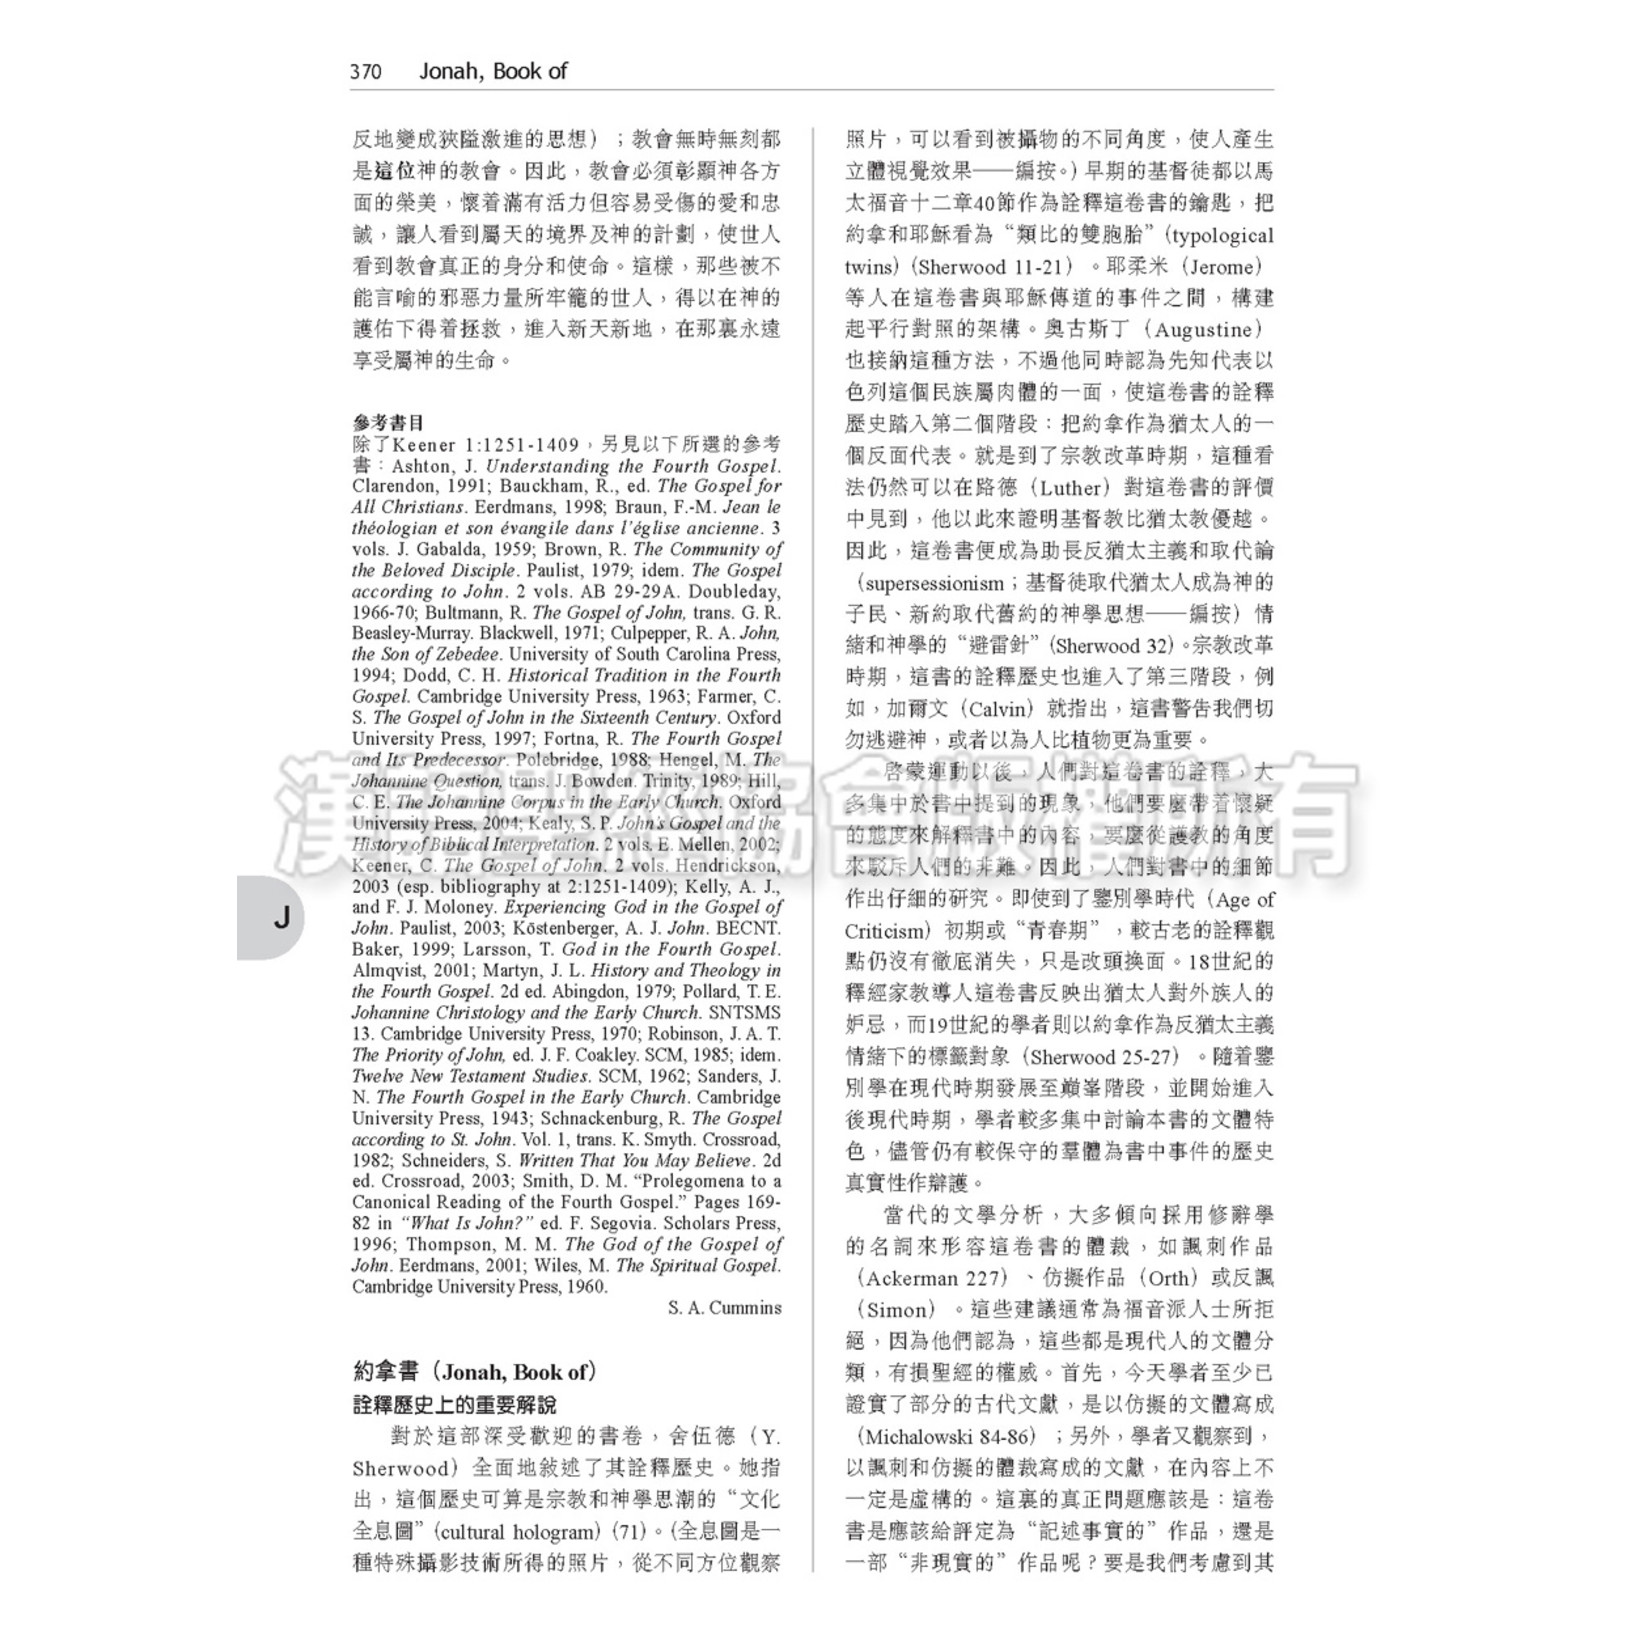 漢語聖經協會 Chinese Bible International 神學釋經詞典 Dictionary for Theological Interpretation of the Bible (DTI)